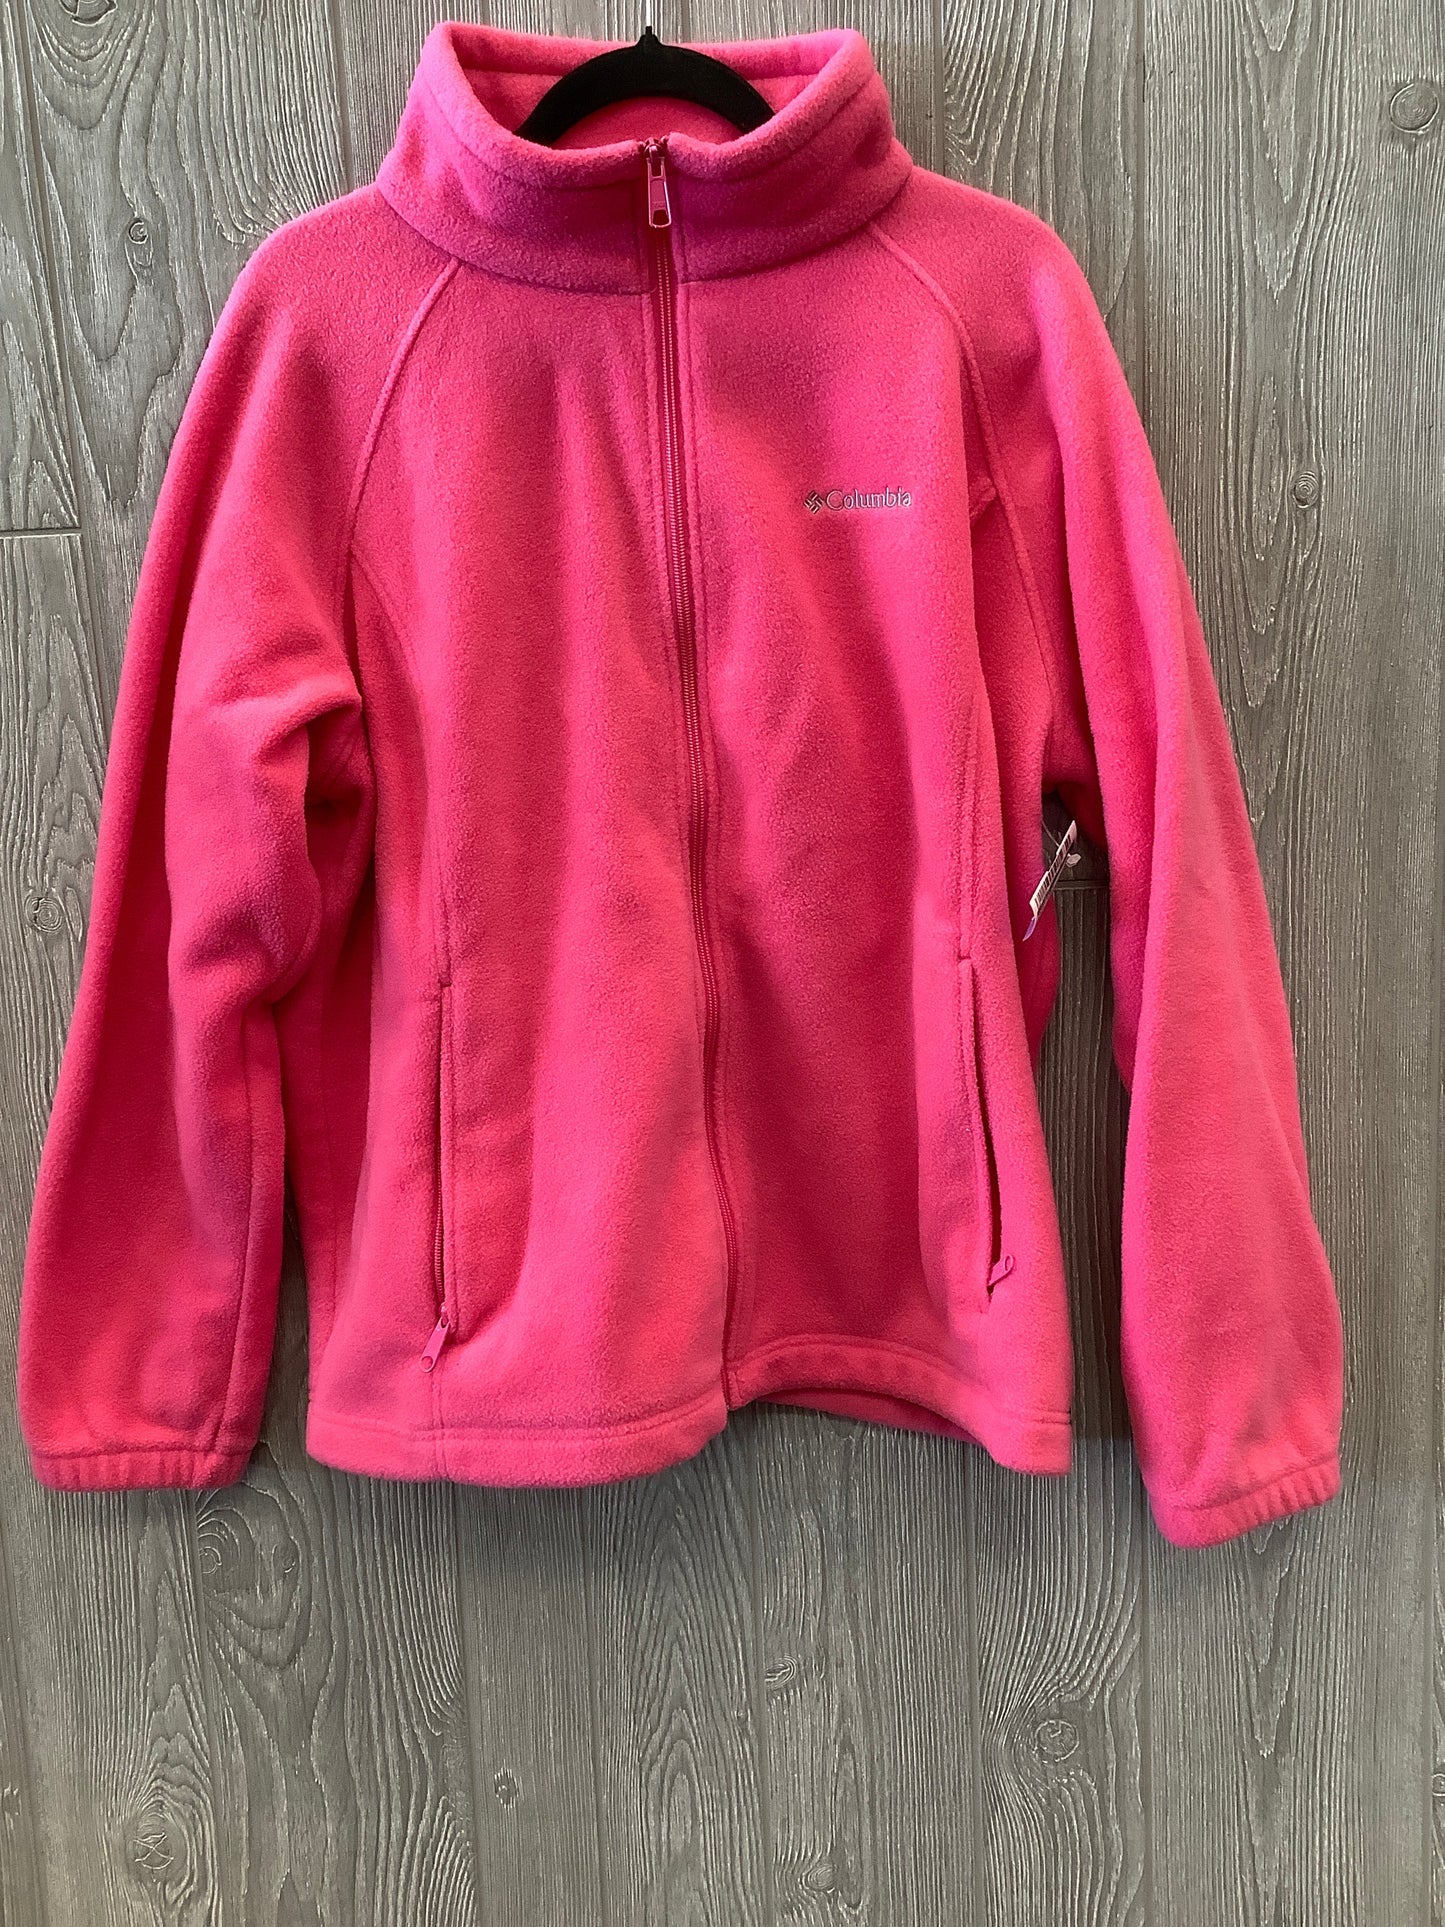 Pink Jacket Fleece Columbia, Size 2x